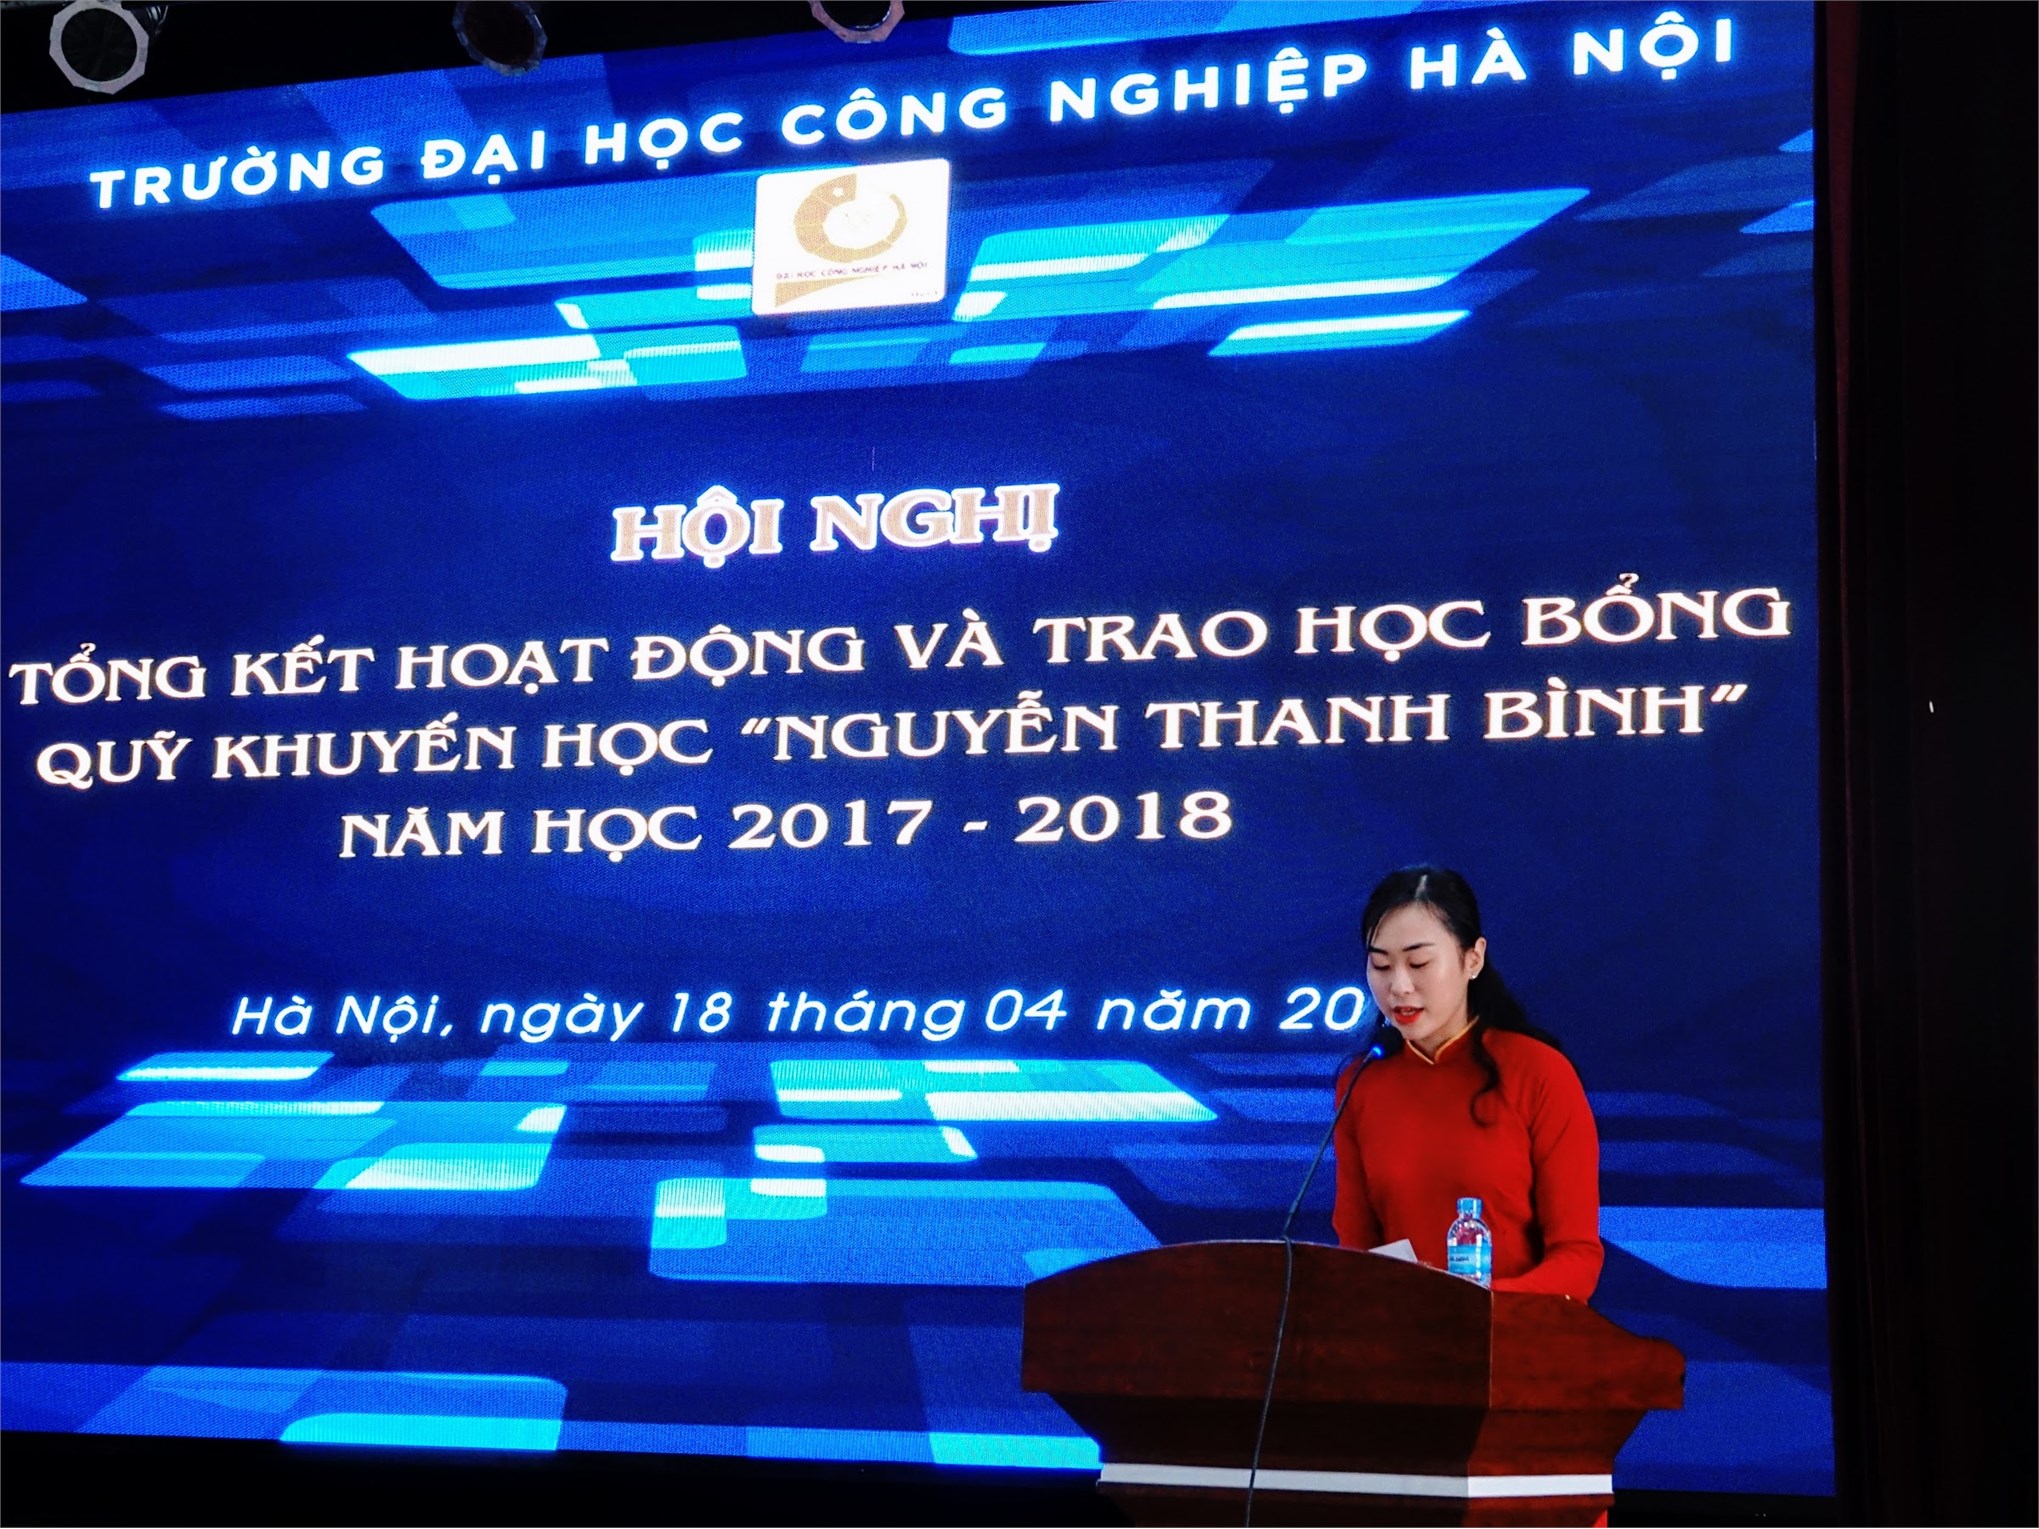 Quỹ khuyến học Nguyễn Thanh Bình đạt số dư 6,2 tỷ đồng